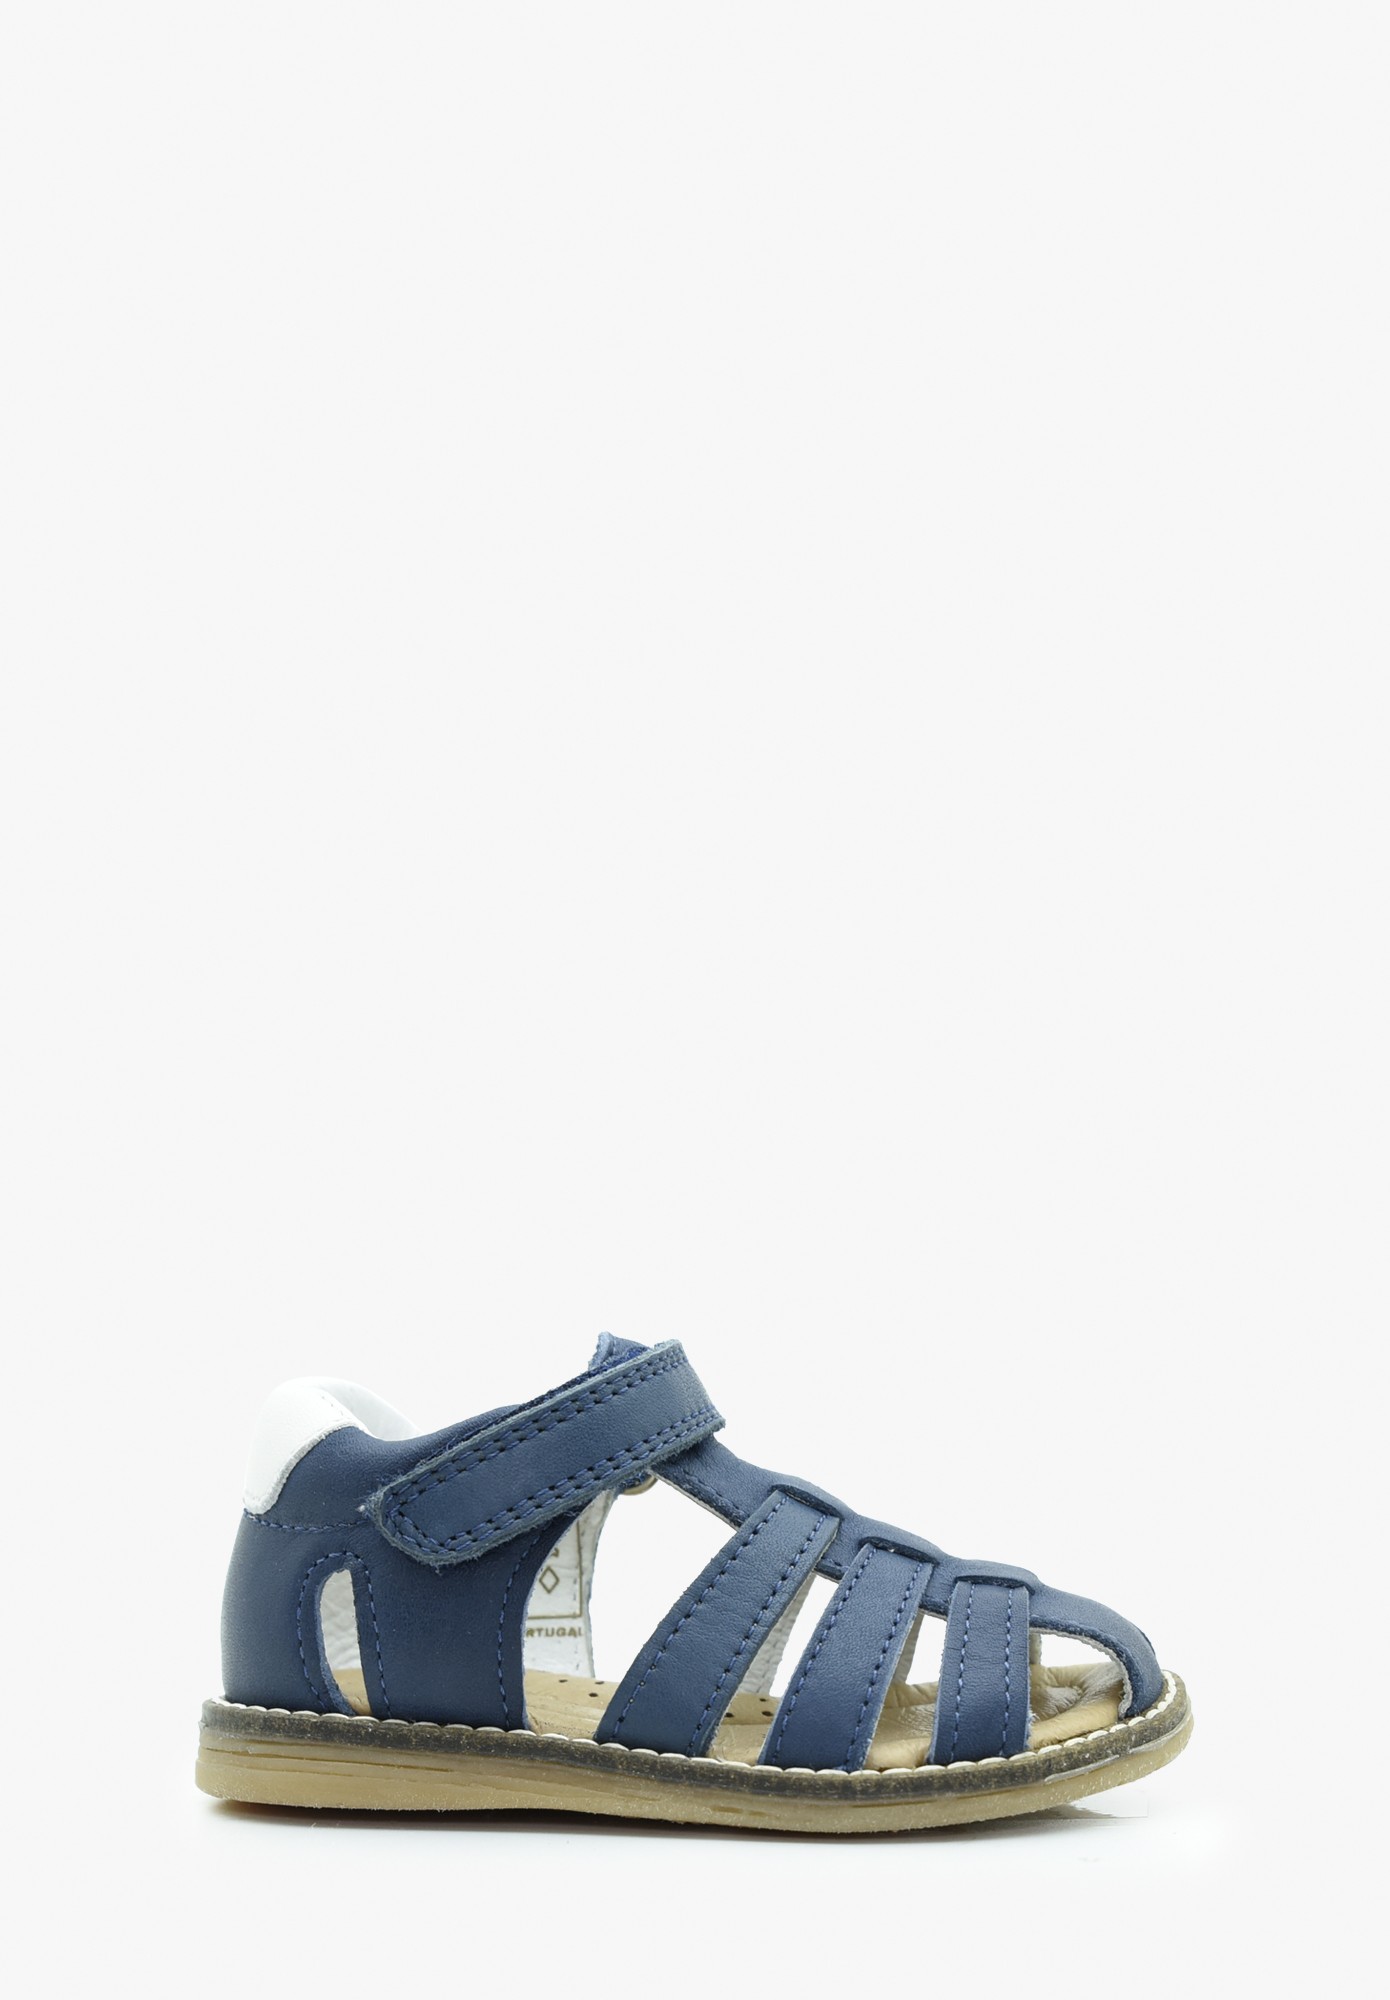 chaussure bébé - Sandale - Garçon